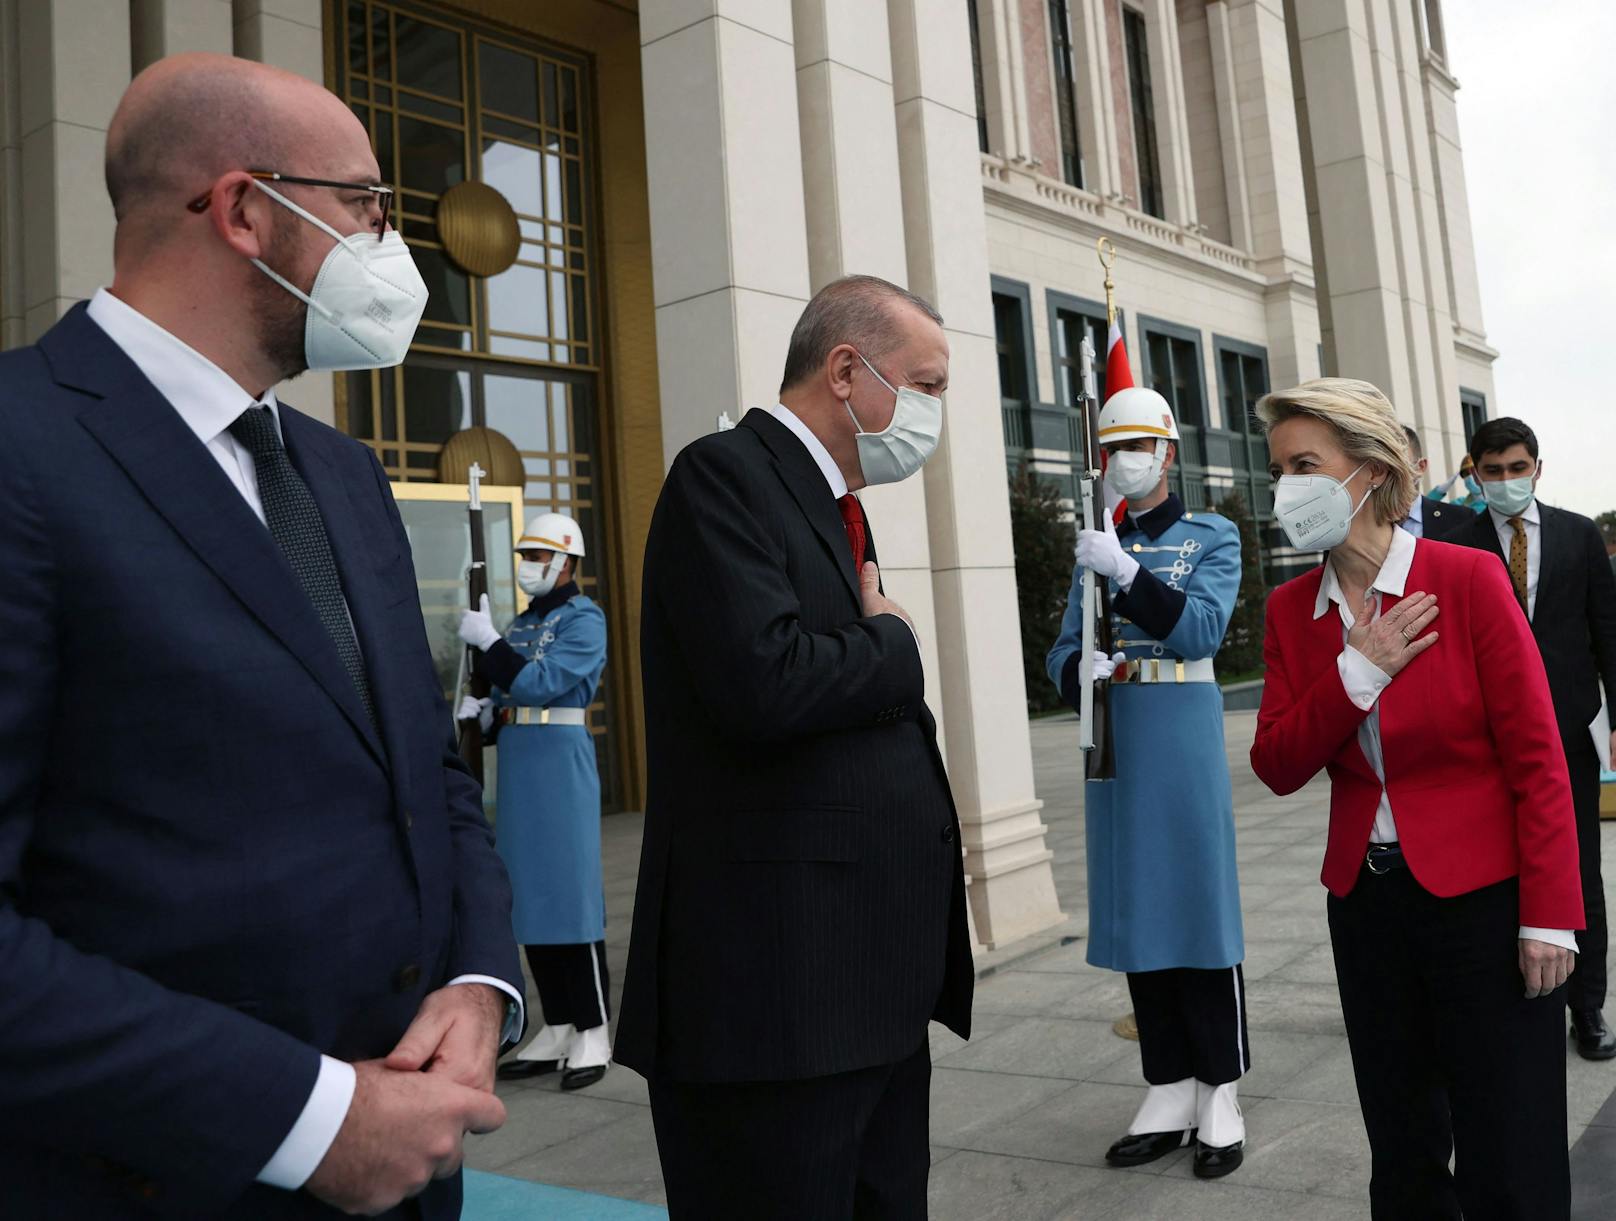 Gemeinsam mit dem EU-Ratspräsidenten Charles Michel stattete die EU-Kommissionspräsidentin Ursula von der Leyen dem türkischen Präsidenten Recep Tayyip Erdogan einen Besuch ab.